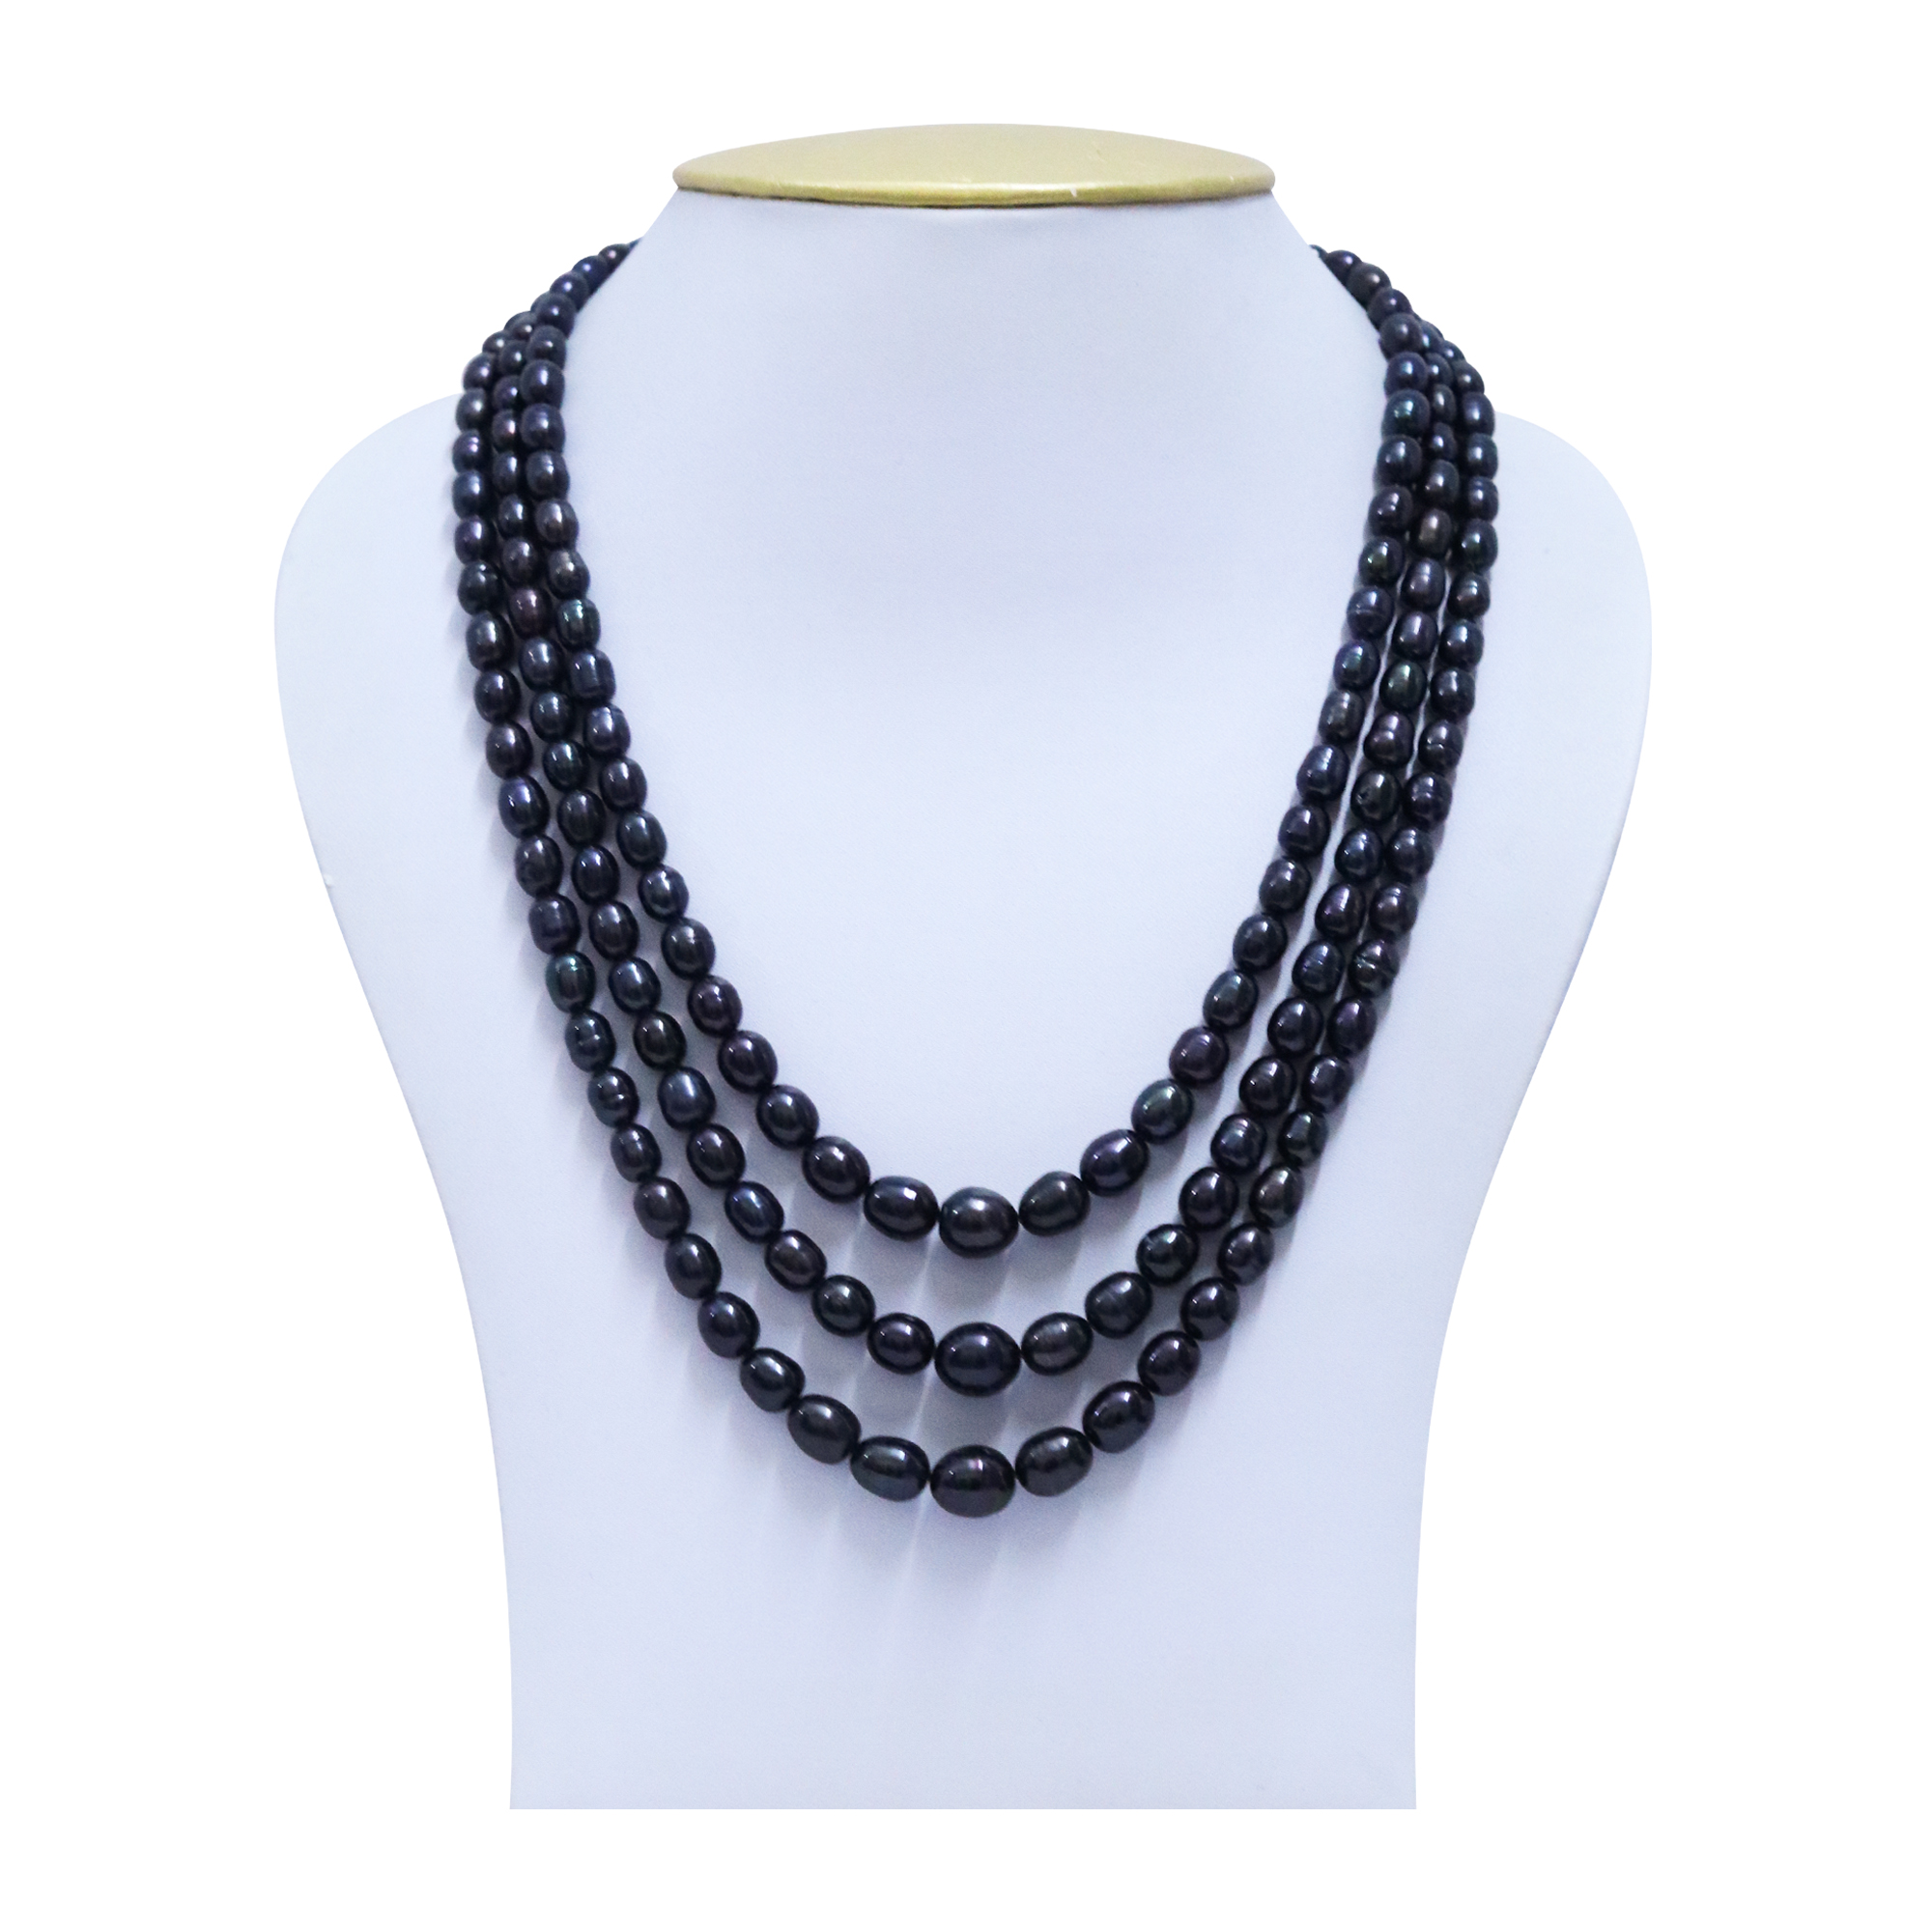 Buy Black Pearl Choker Necklace Online - Ferosh